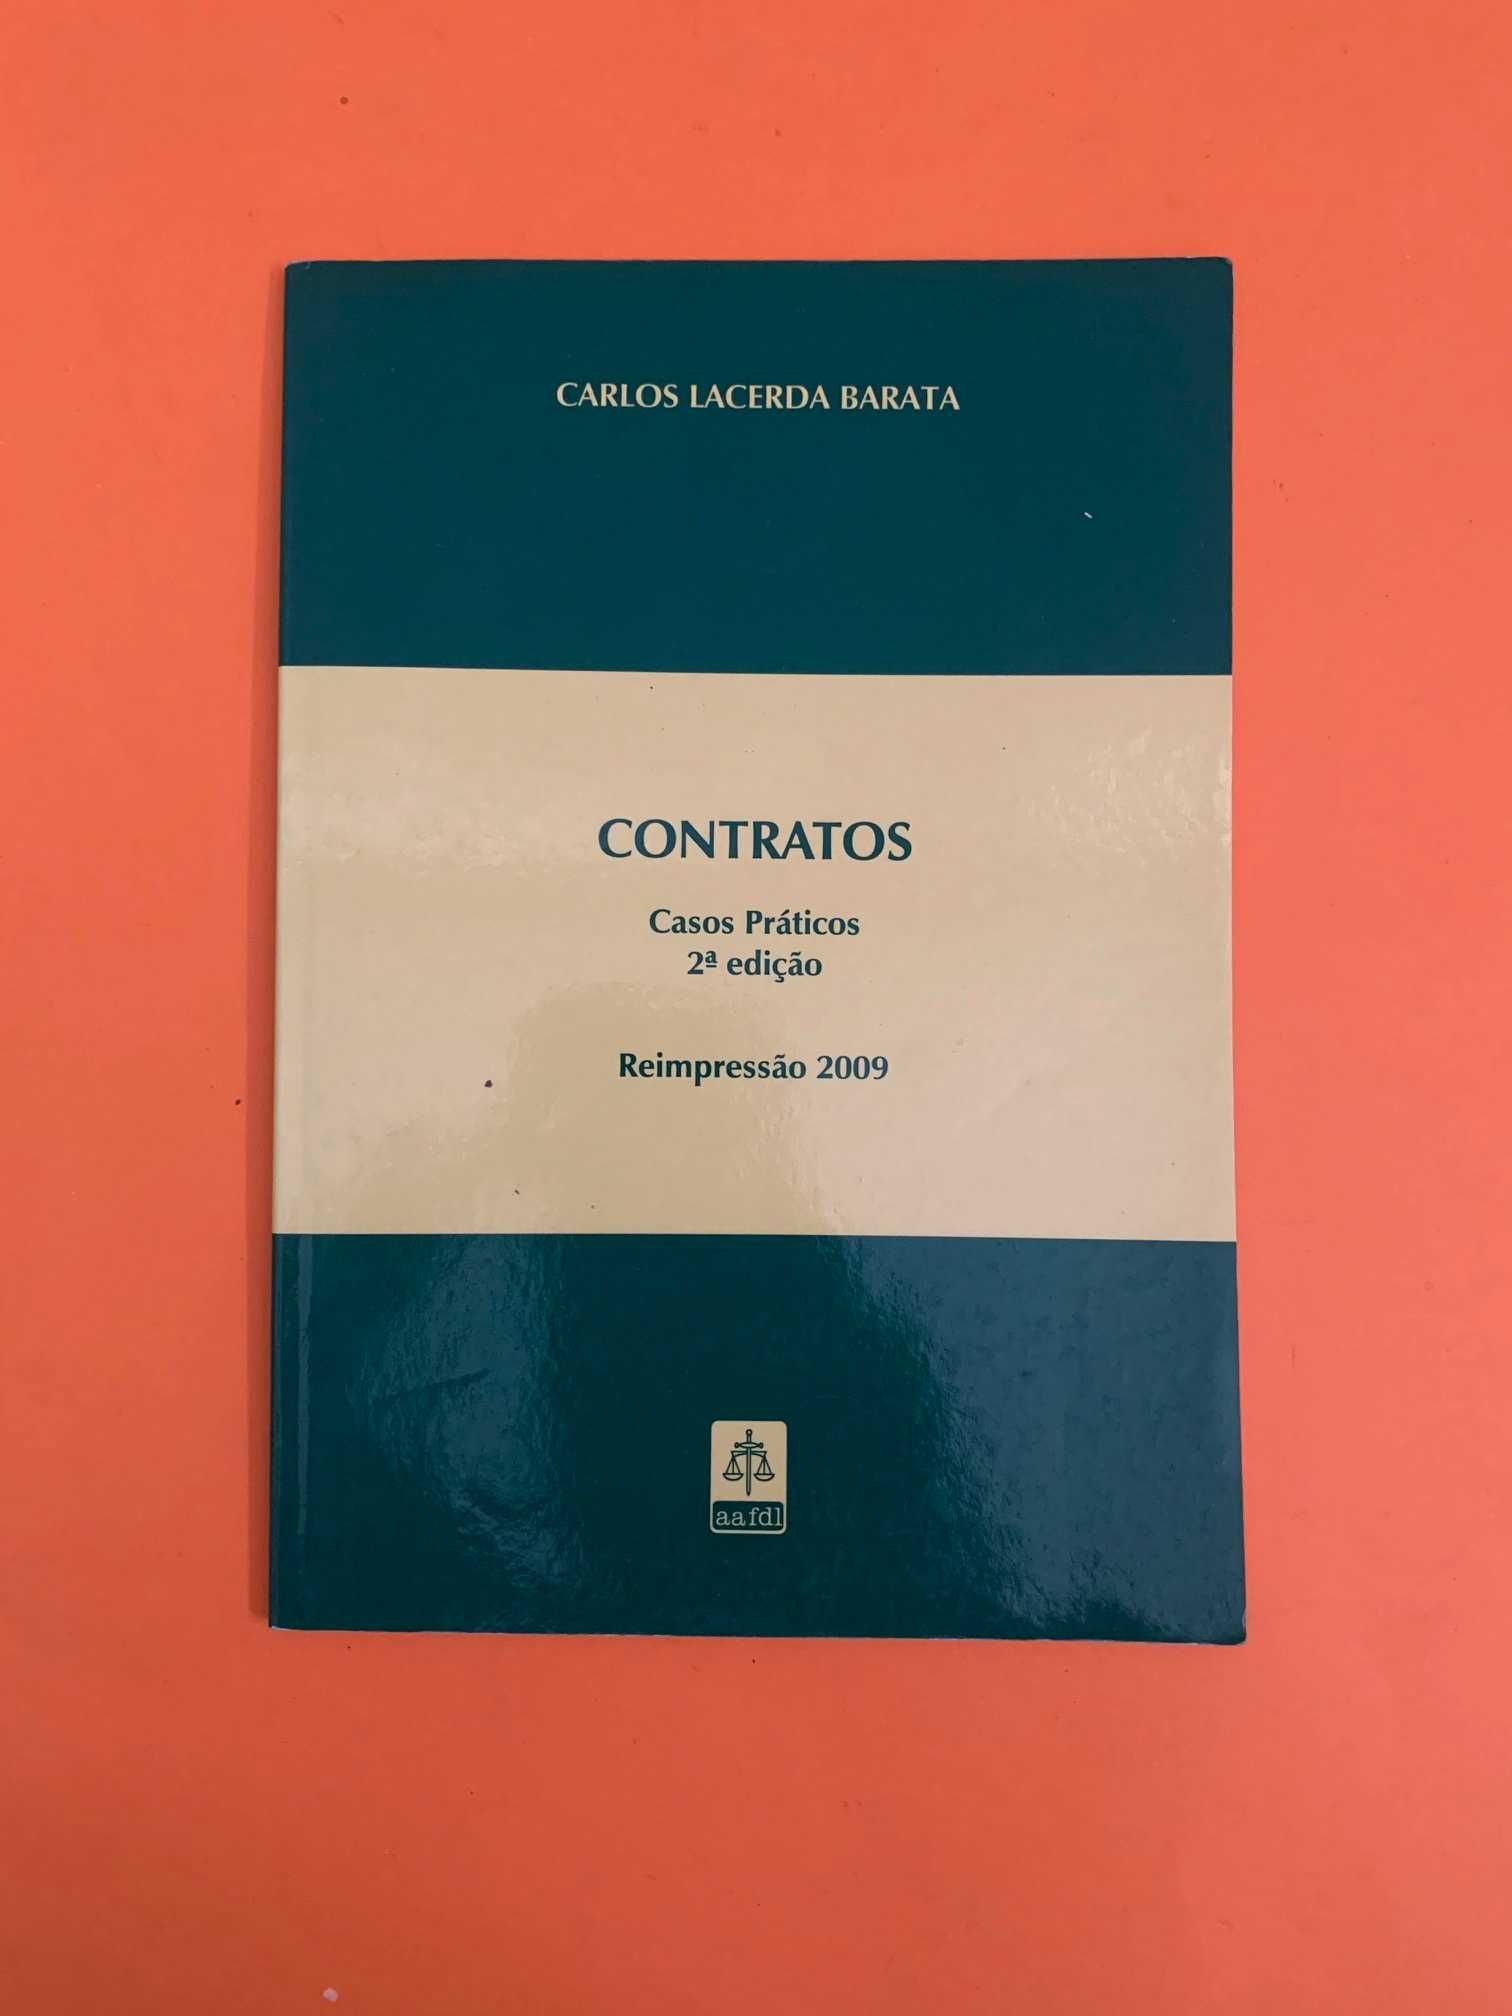 Contratos: Casos Práticos -  Carlos Lacerda Barata